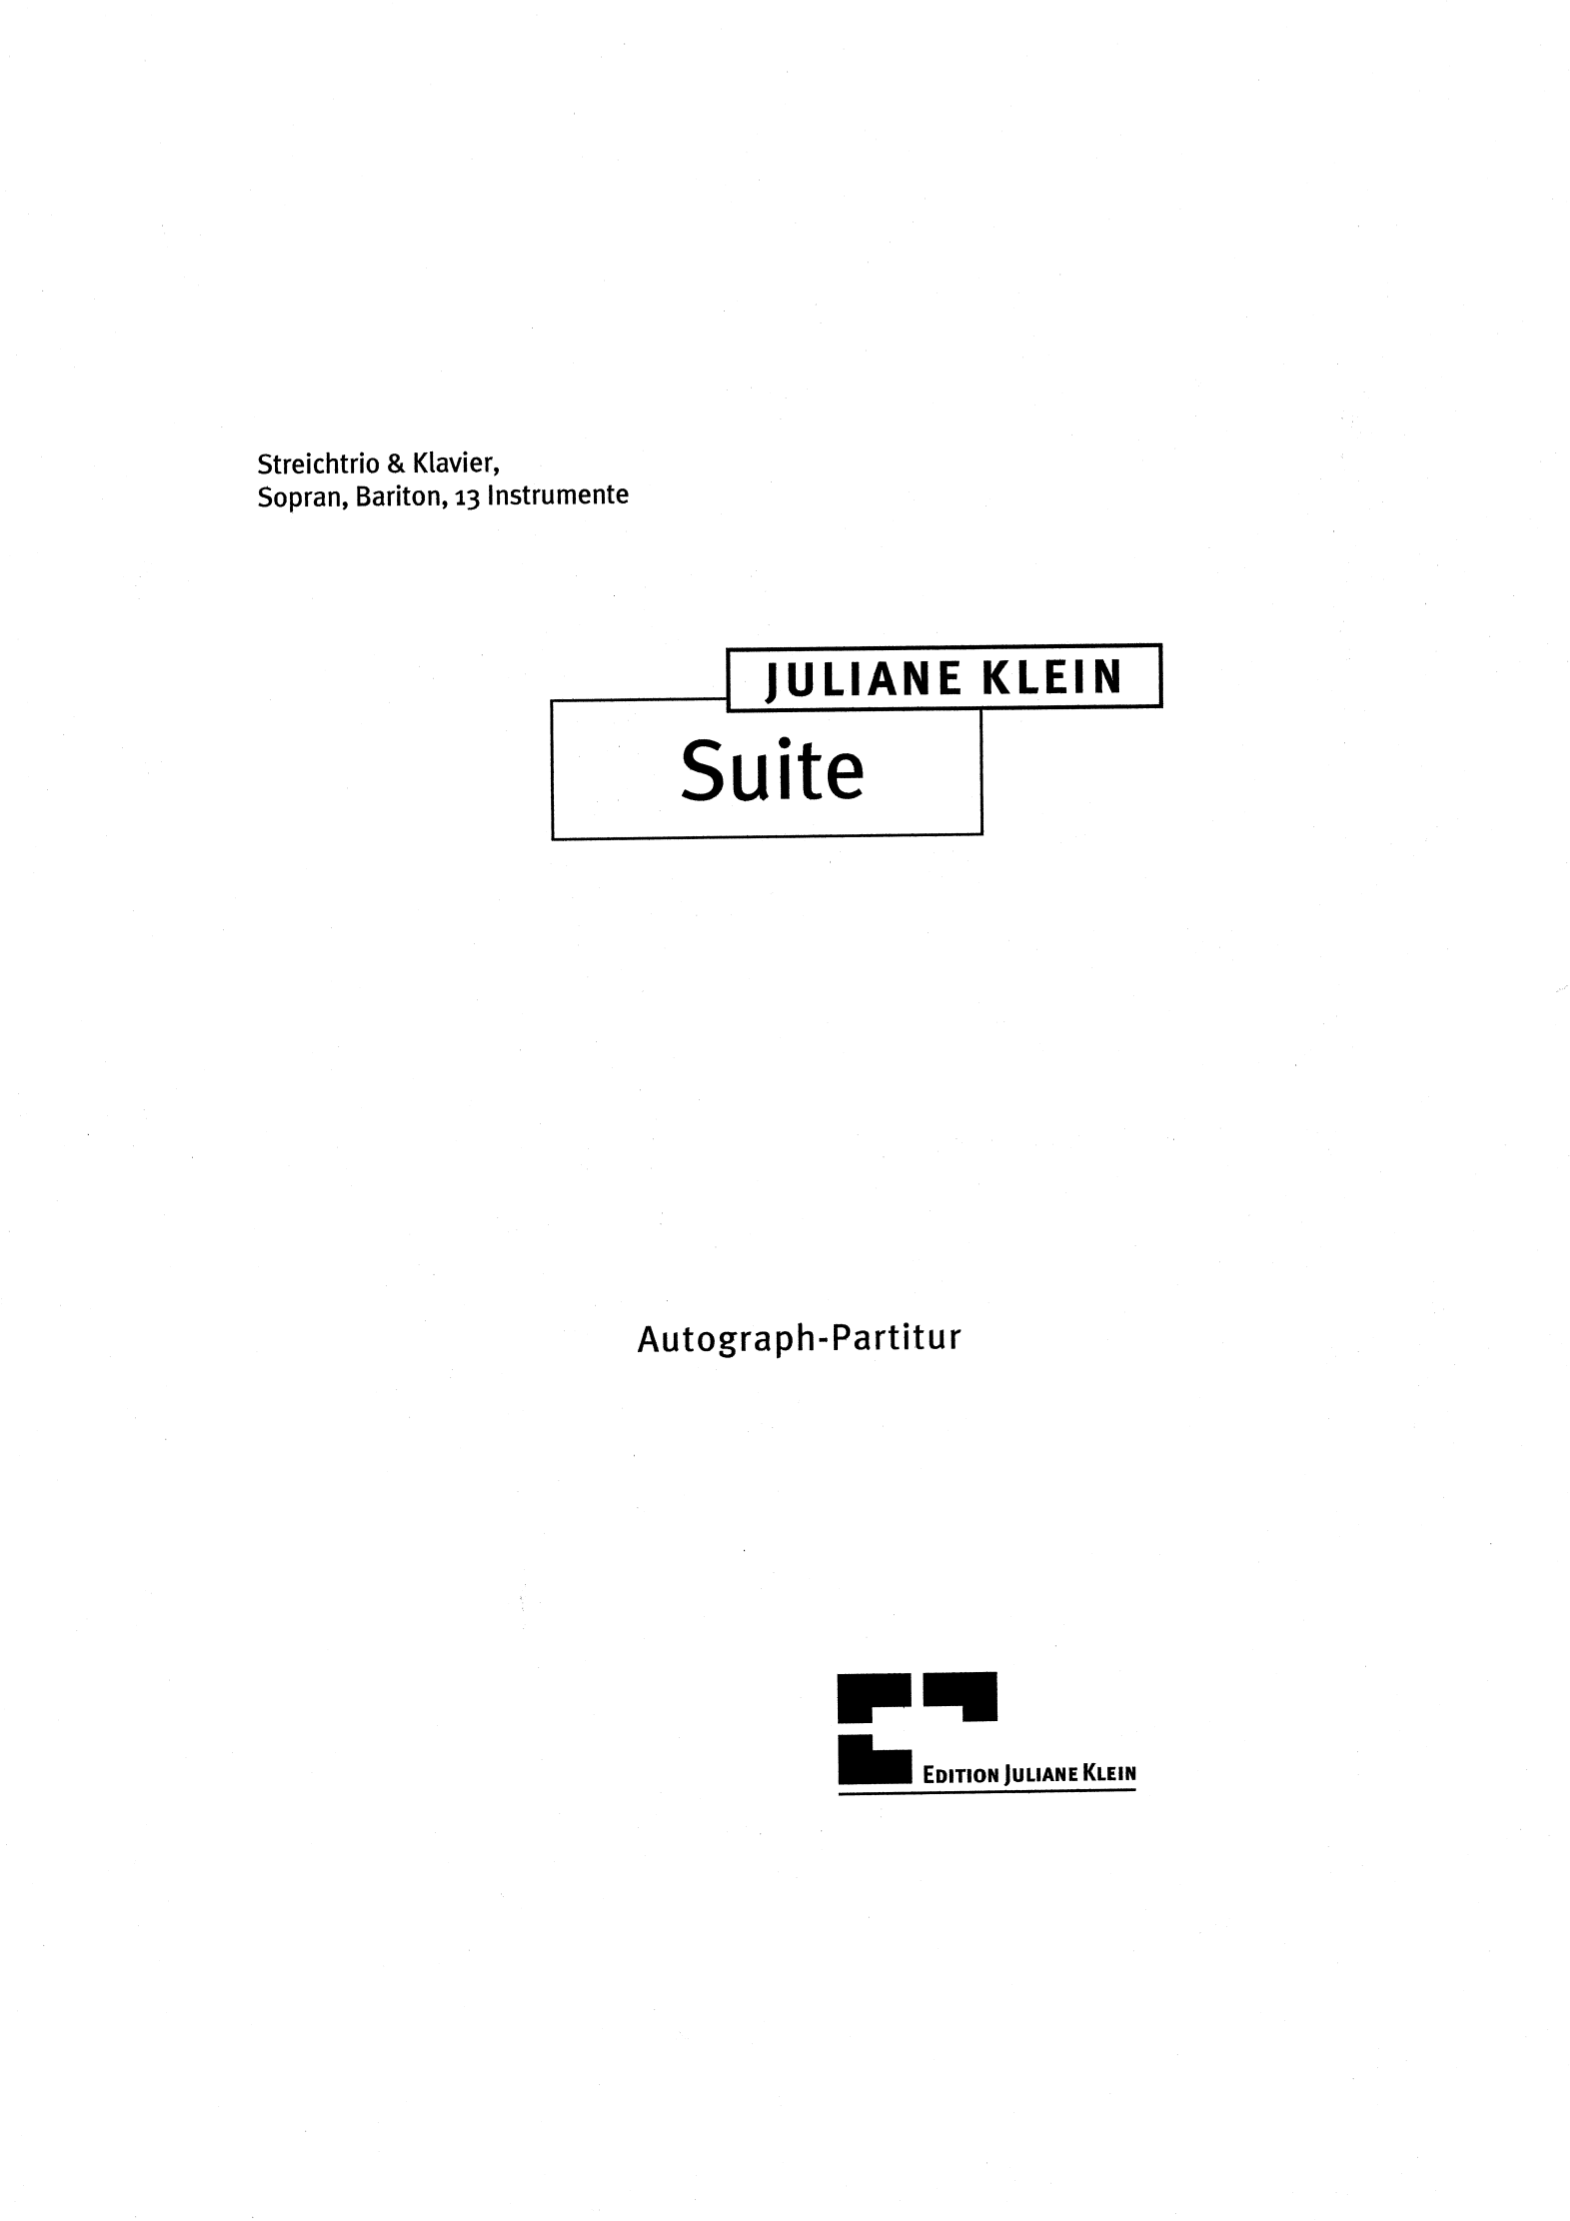 Suite Juliane_Klein_z